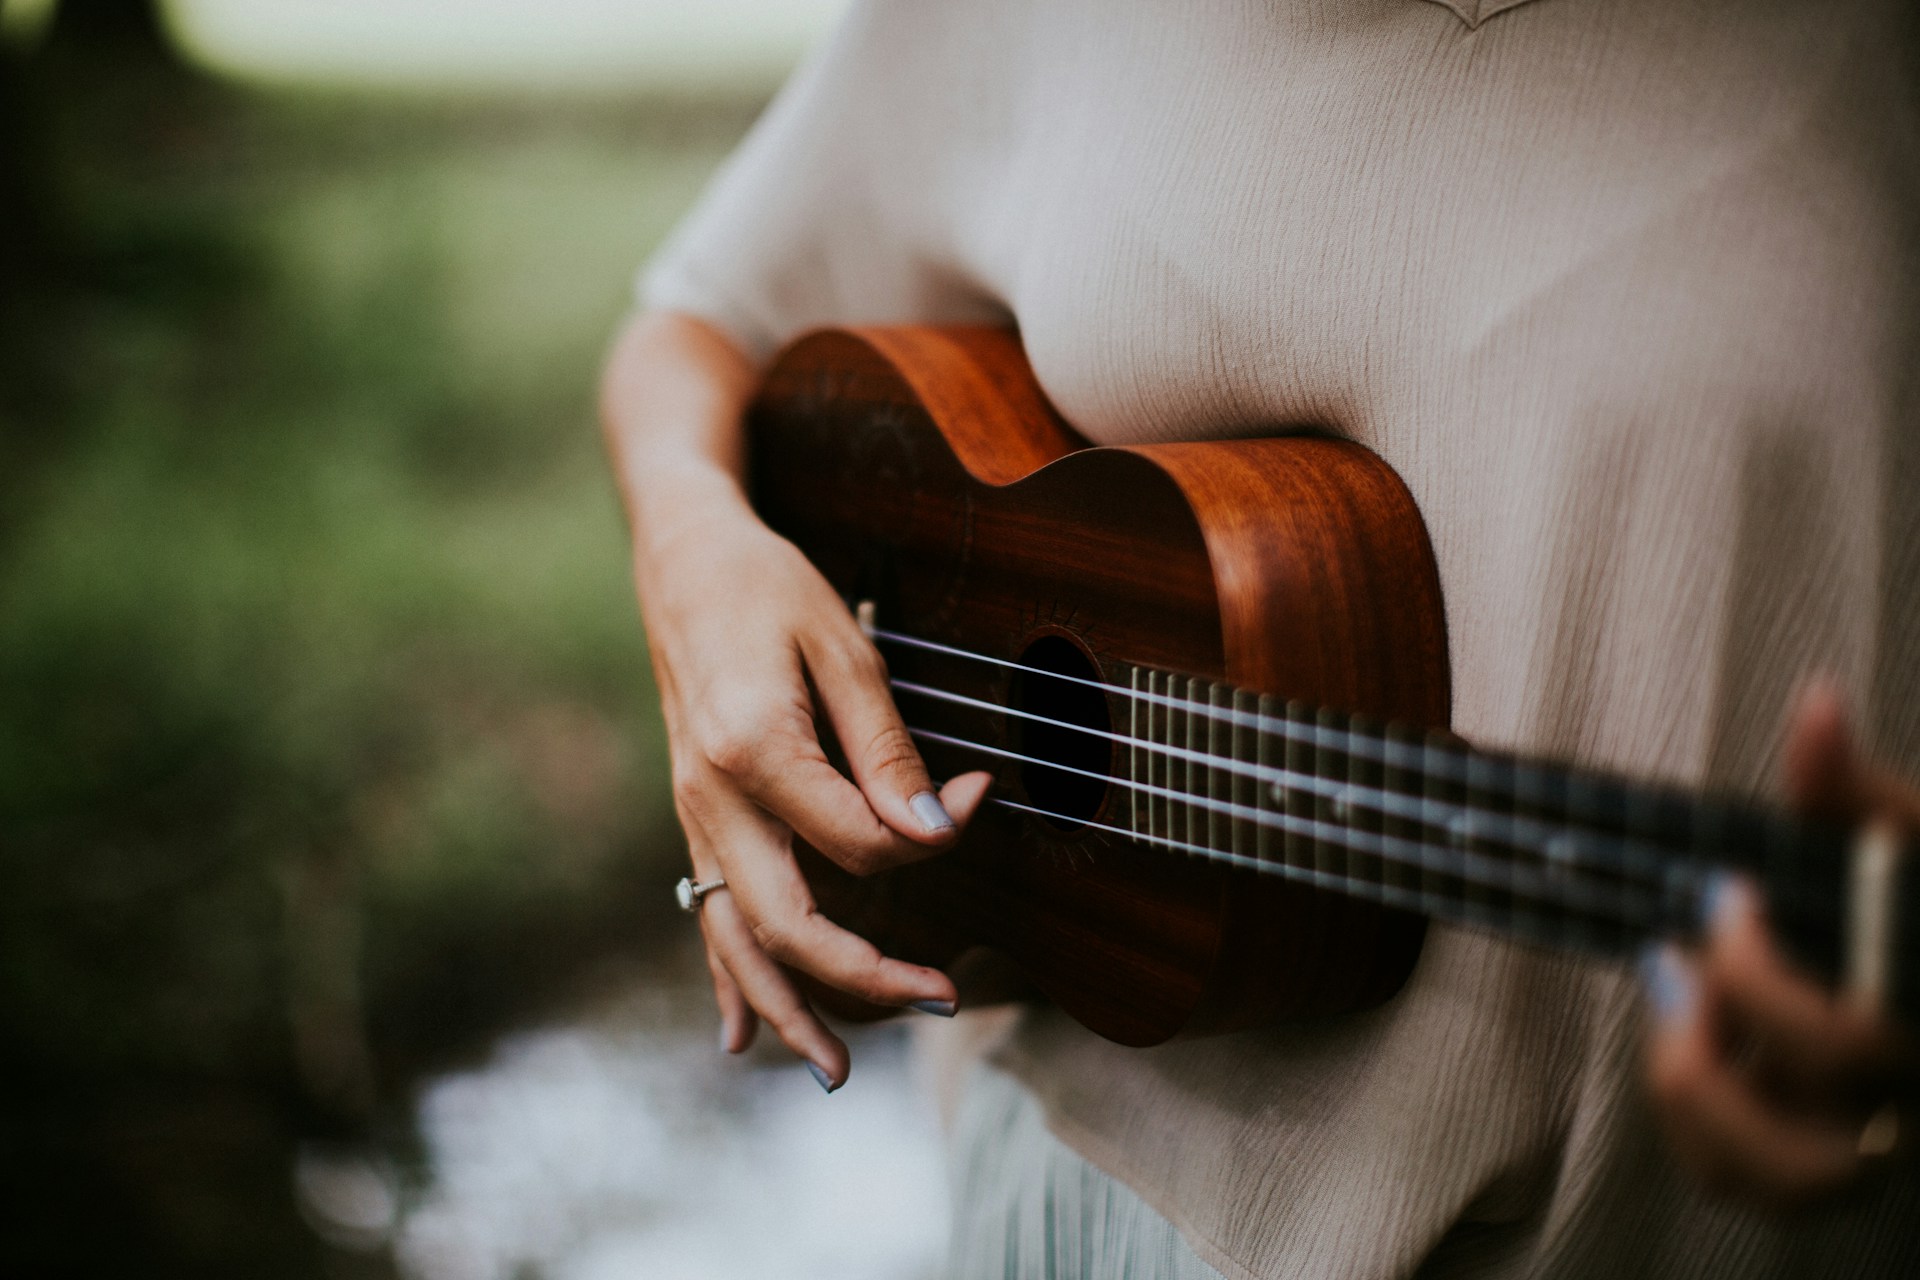 Lr dig att spela ukulele p 5 minuter!